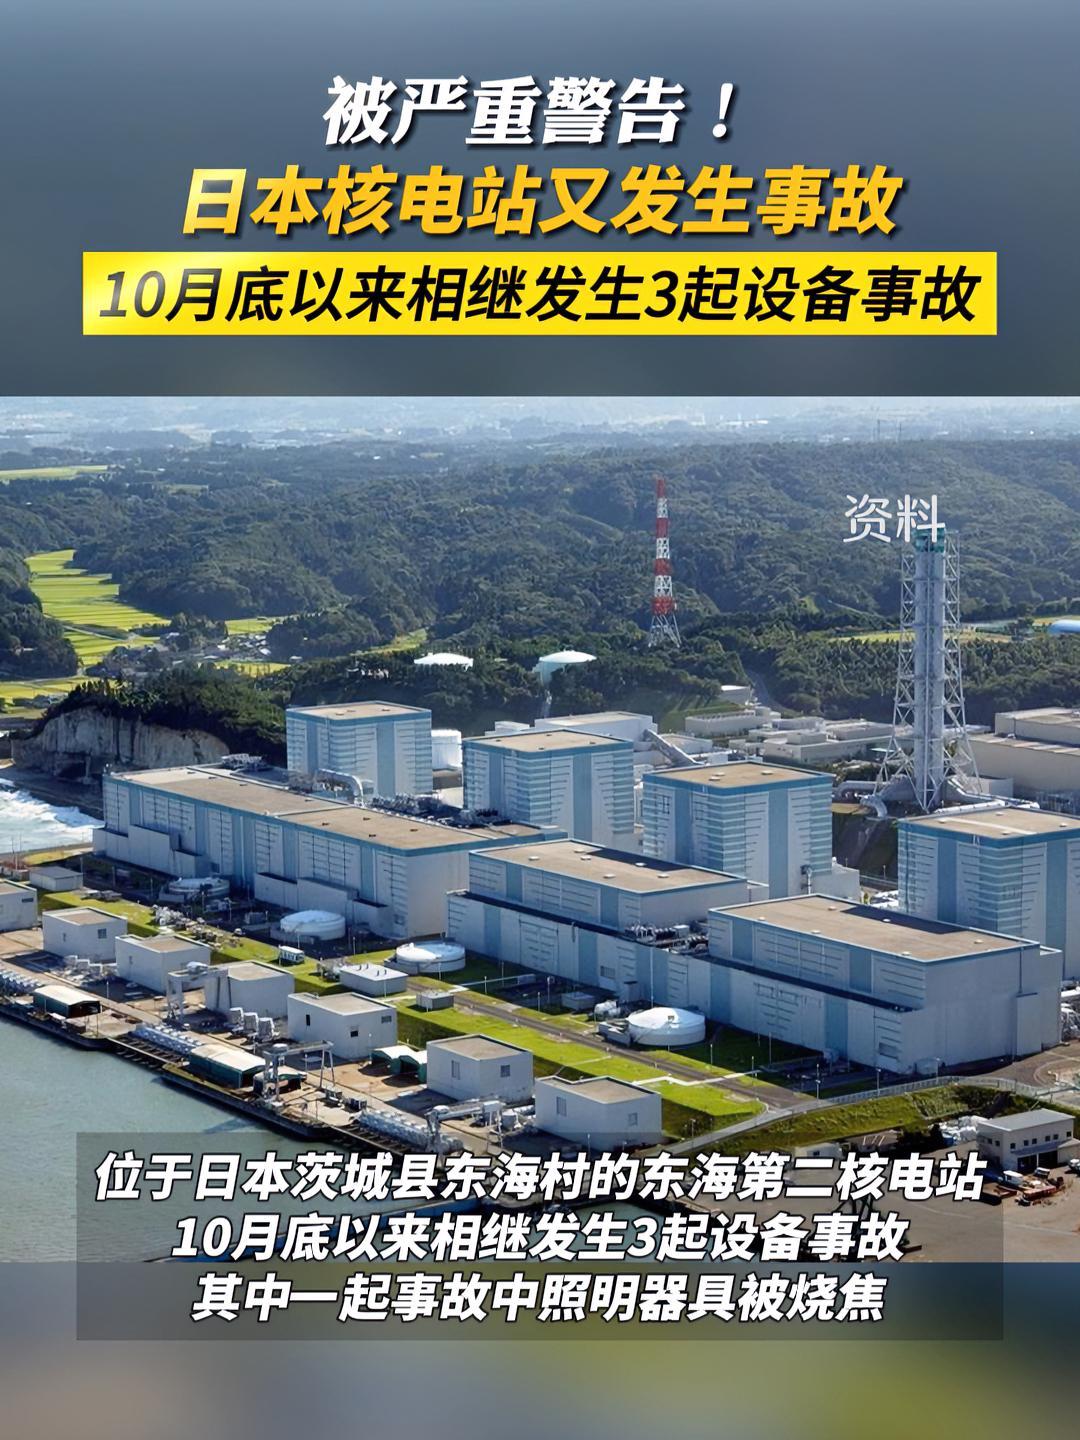 被严重警告日本核电站又发生事故日本核电站安全事故